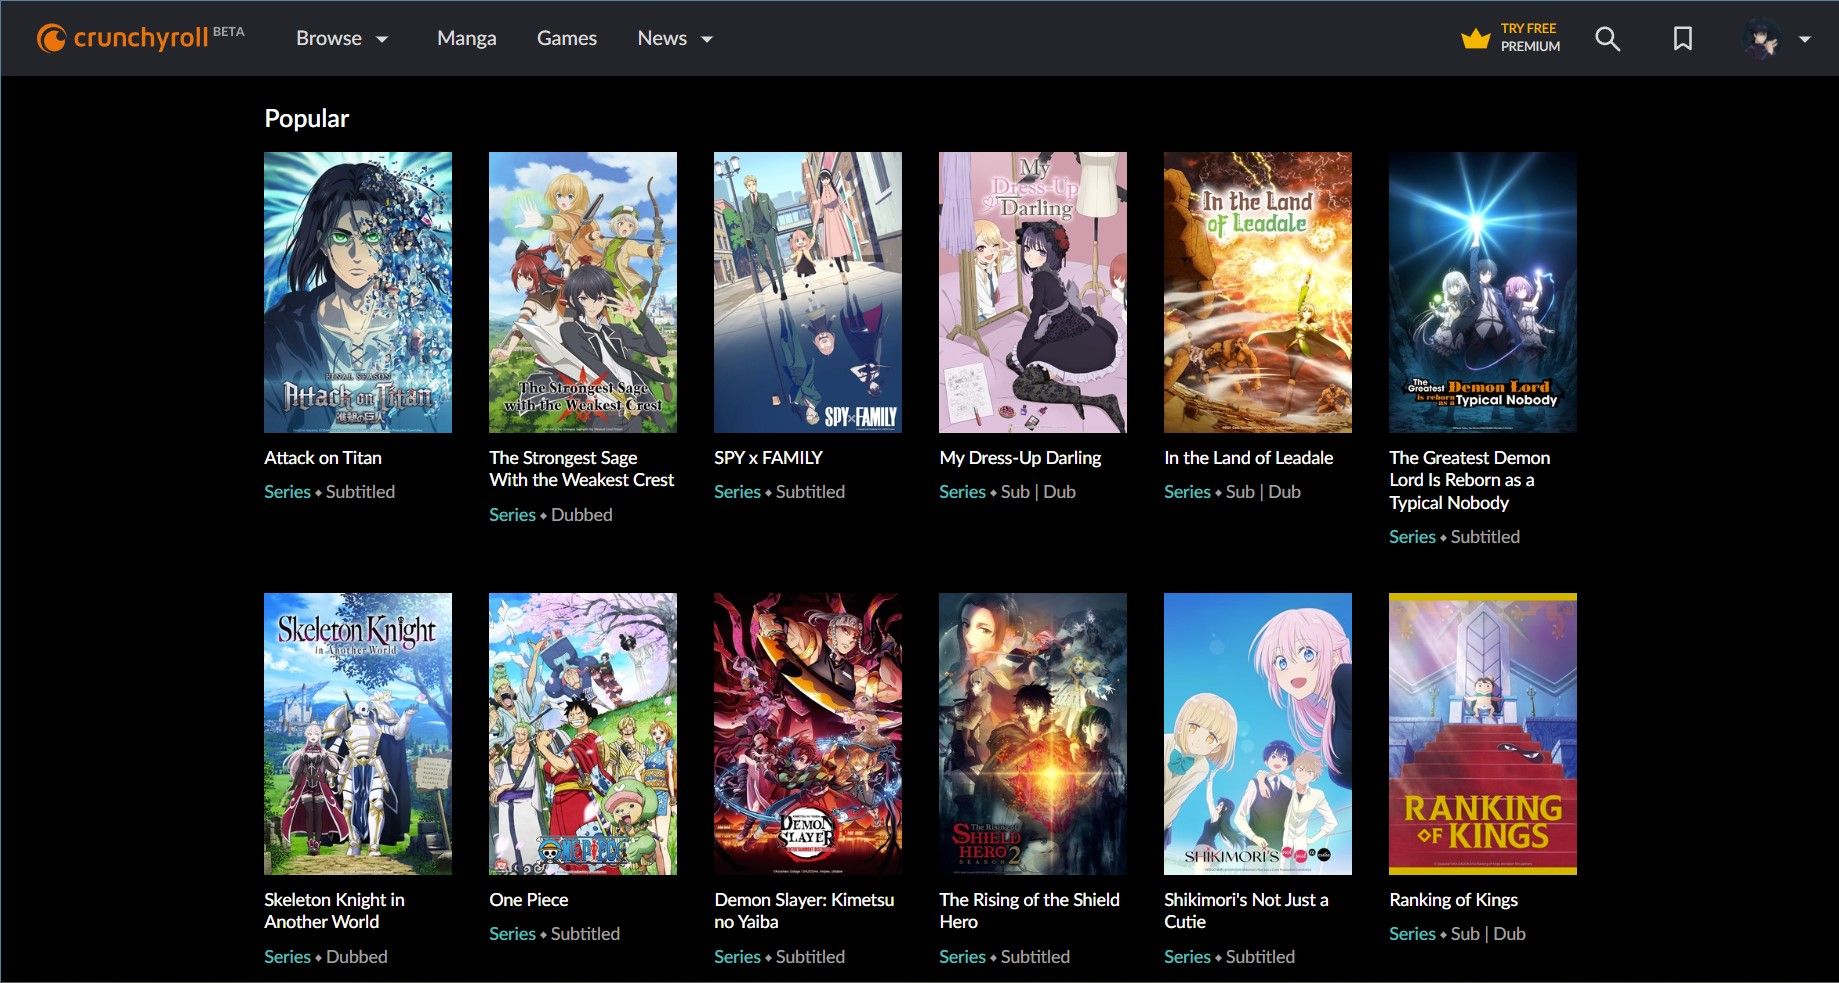 interfaz de usuario beta de crunchyroll con anime popular en pantalla